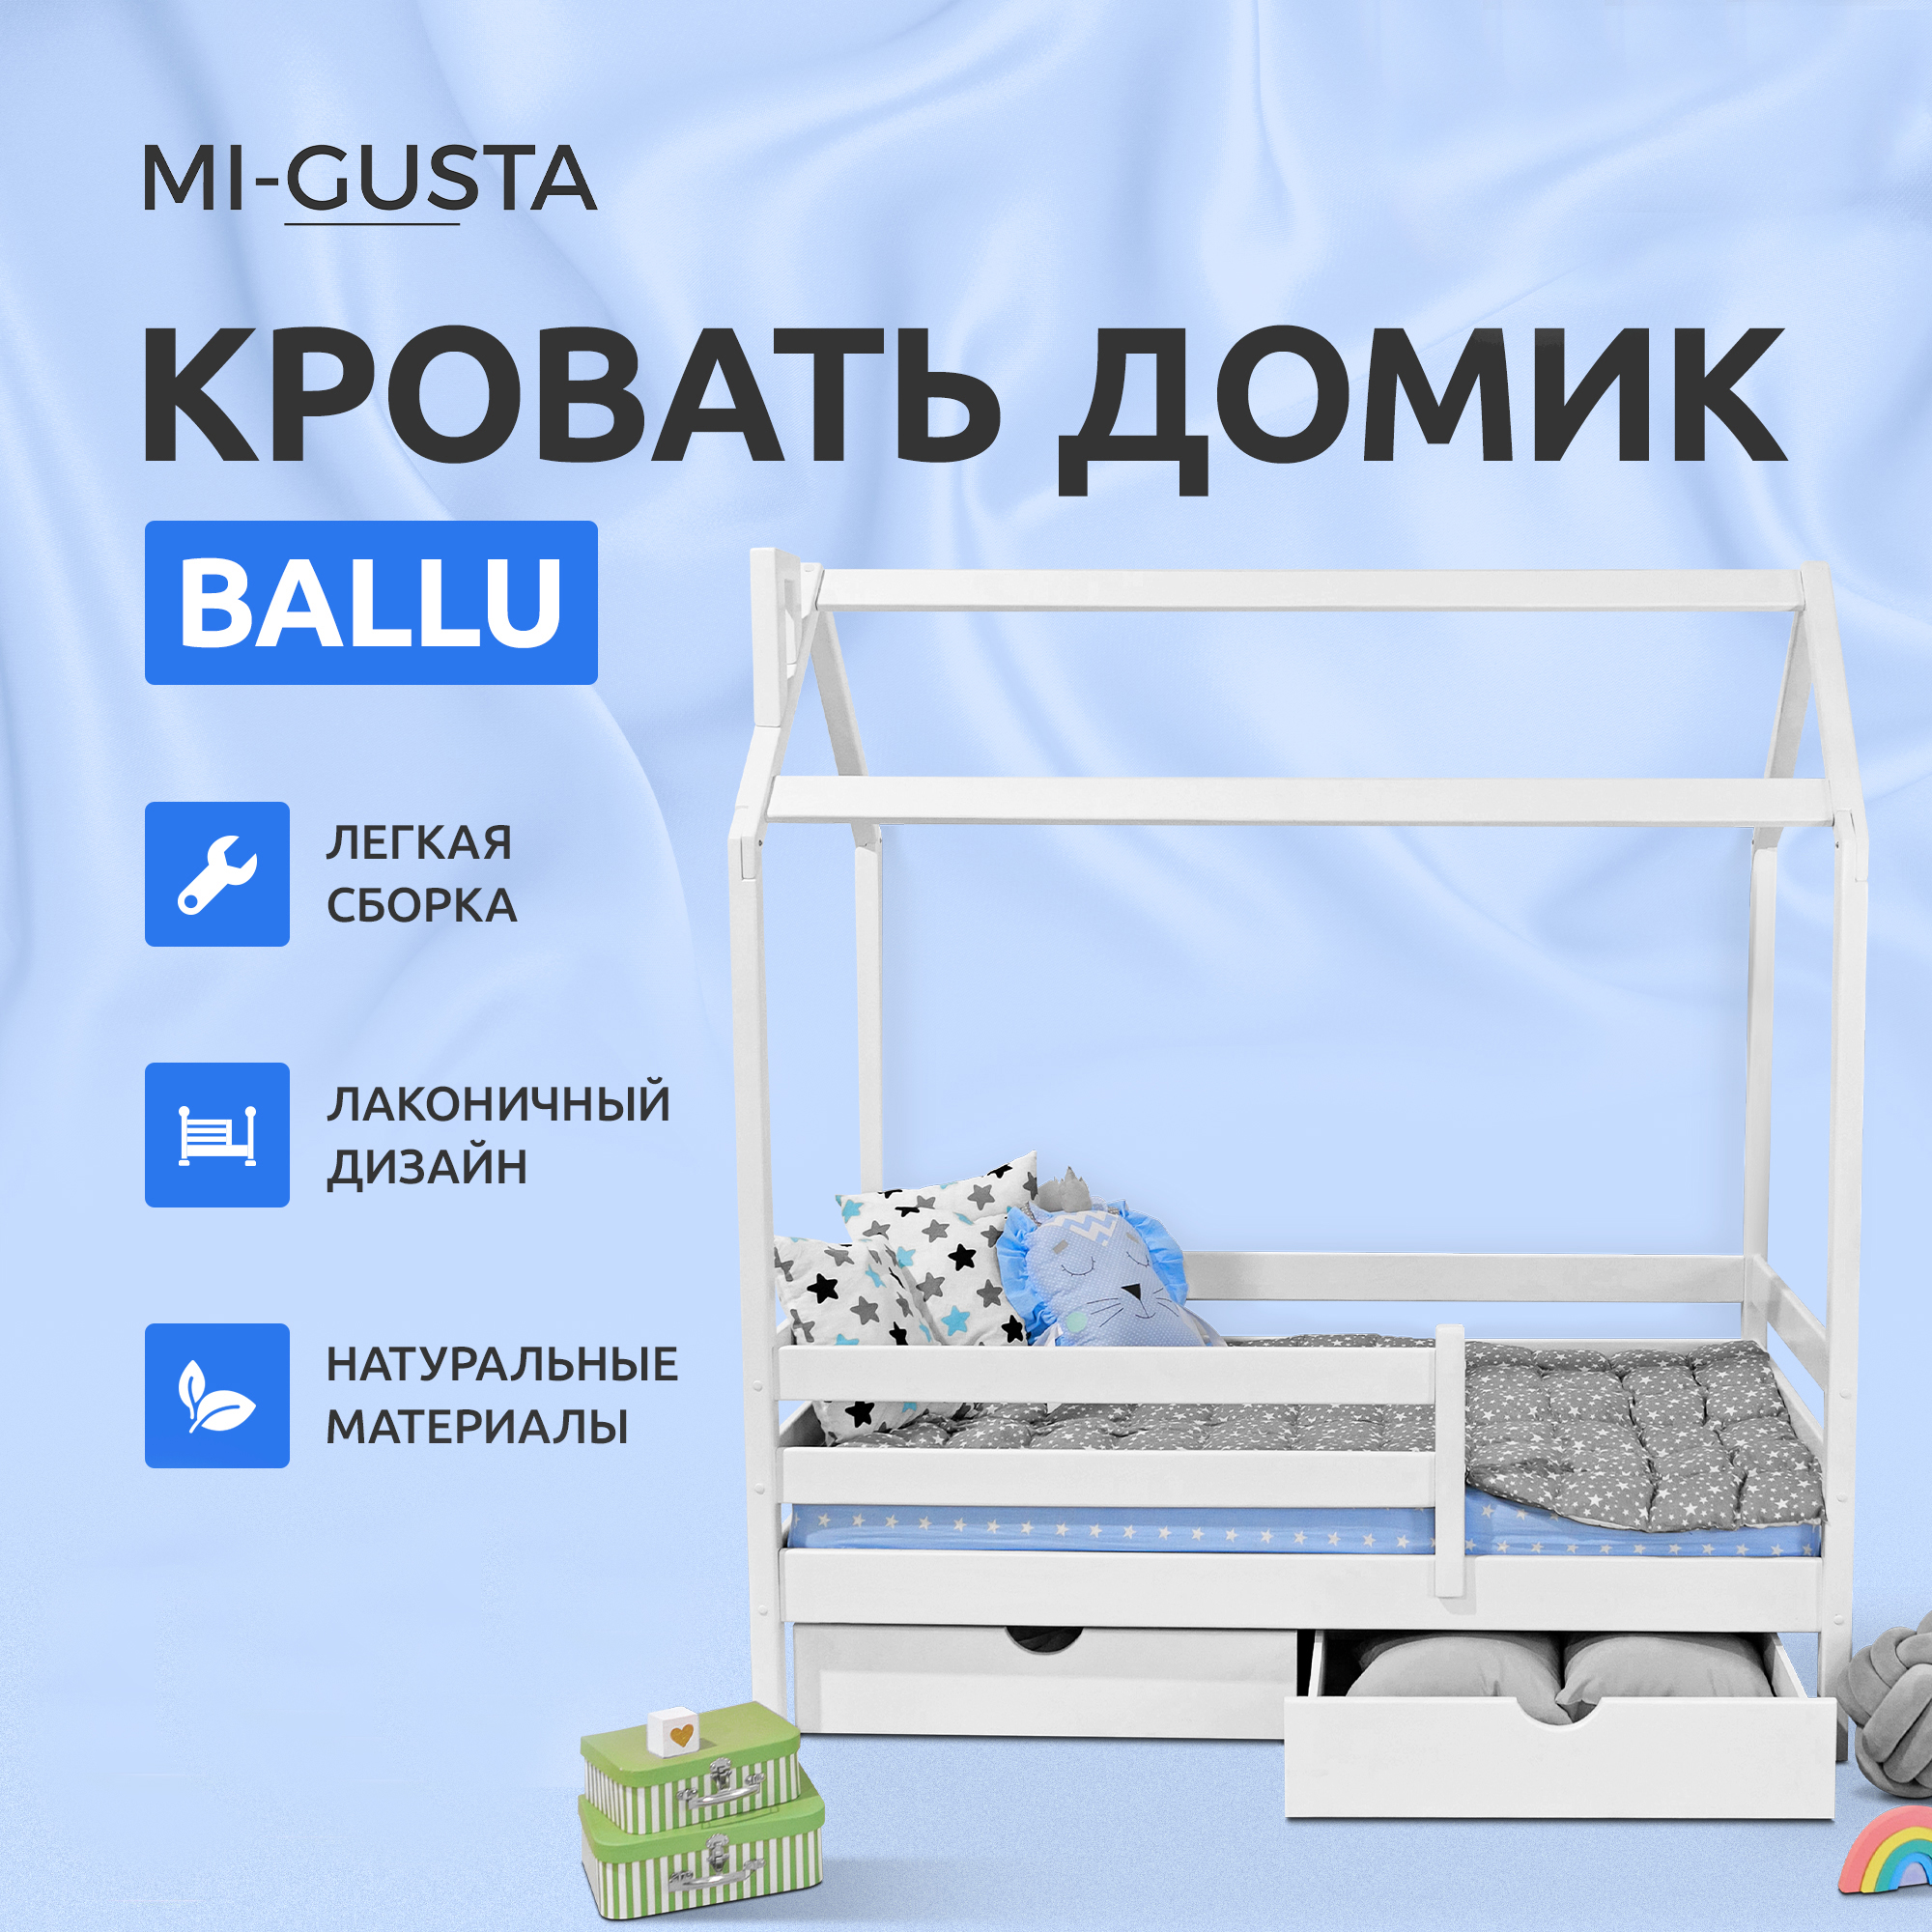 Кровать детская Mi-Gusta Ballu, 189х89х175, береза, кровать-домик, без ящиков